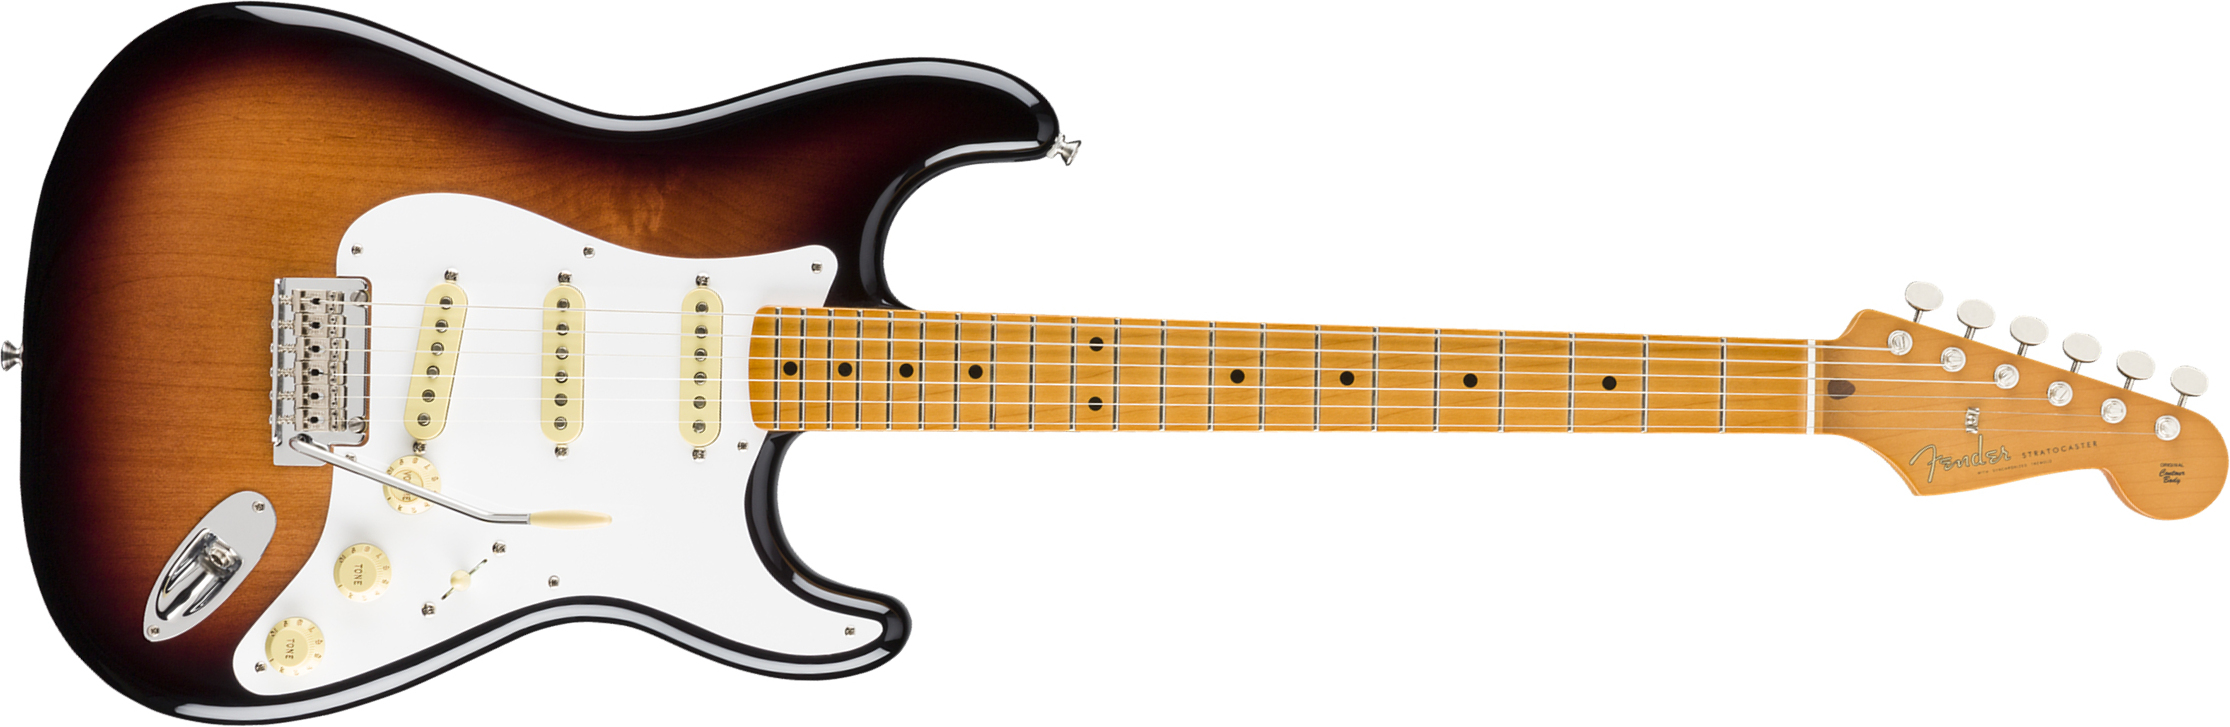 Fender Strat 50s Vintera Modified Mex Mn - 2-color Sunburst - Elektrische gitaar in Str-vorm - Main picture